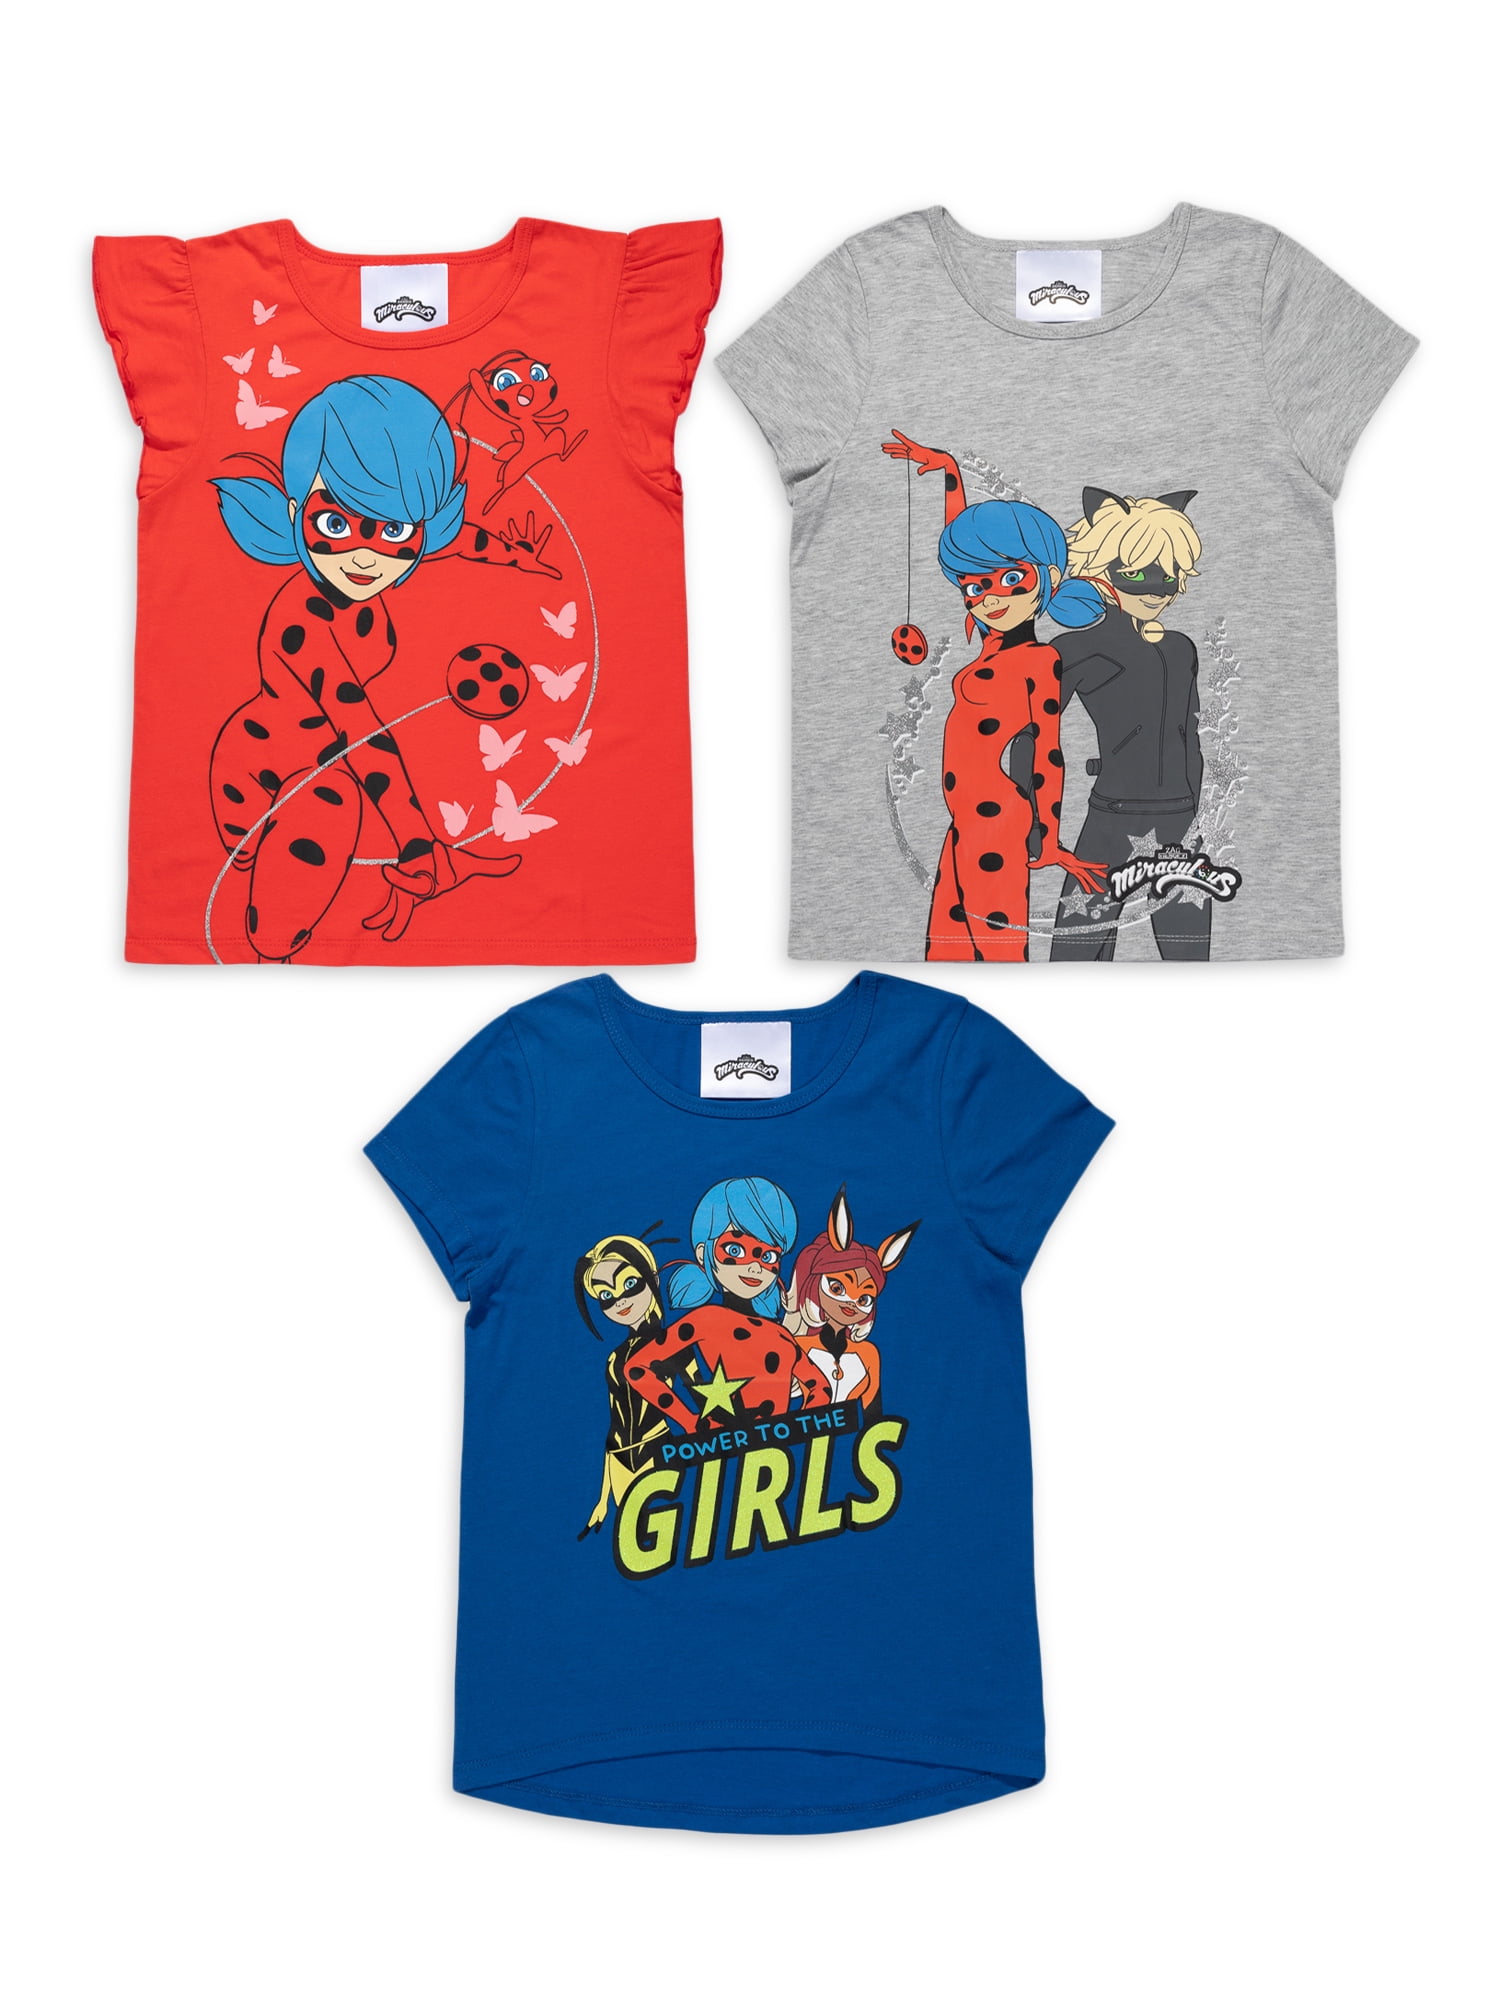 Ladybug Mädchen T-shirt 3 Varianten wählbar Größe 104-128 NEU! 